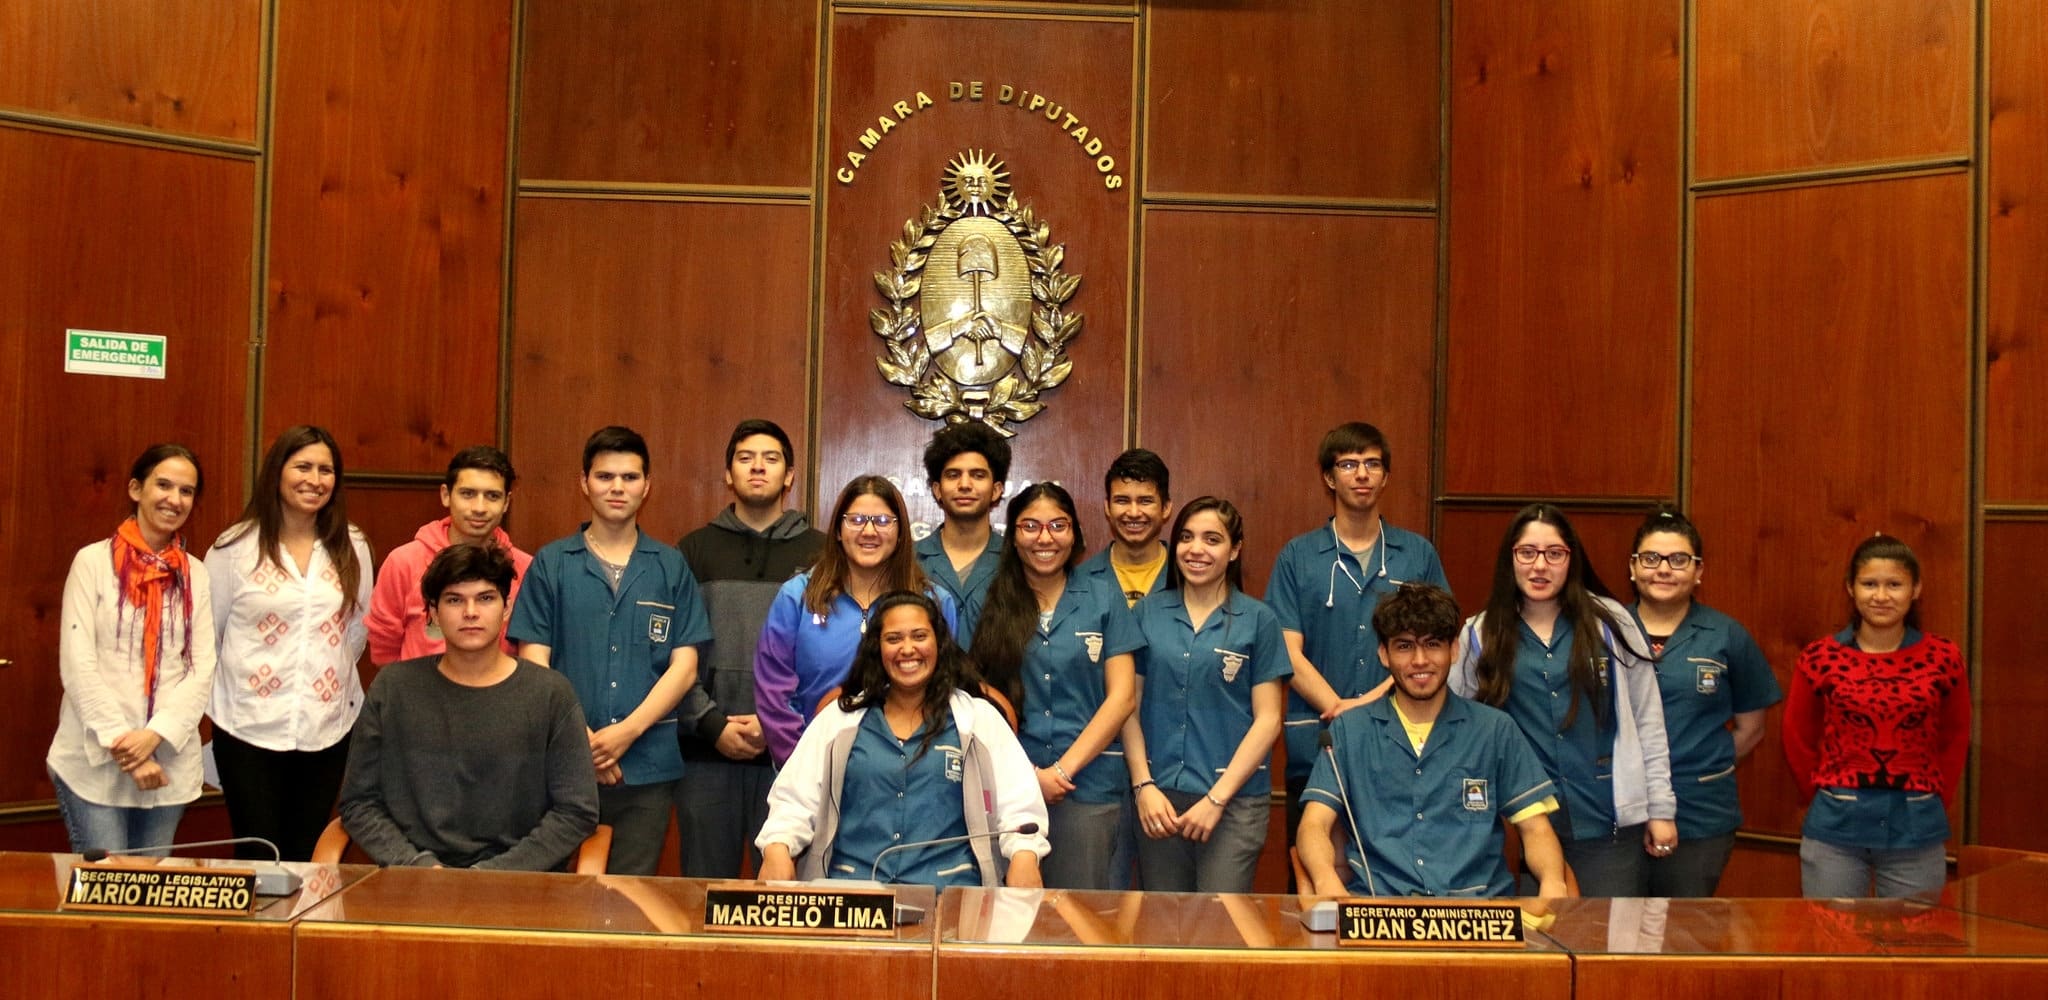 La escuela "Provincia de Tucumán" visitó la Cámara de Diputados. 